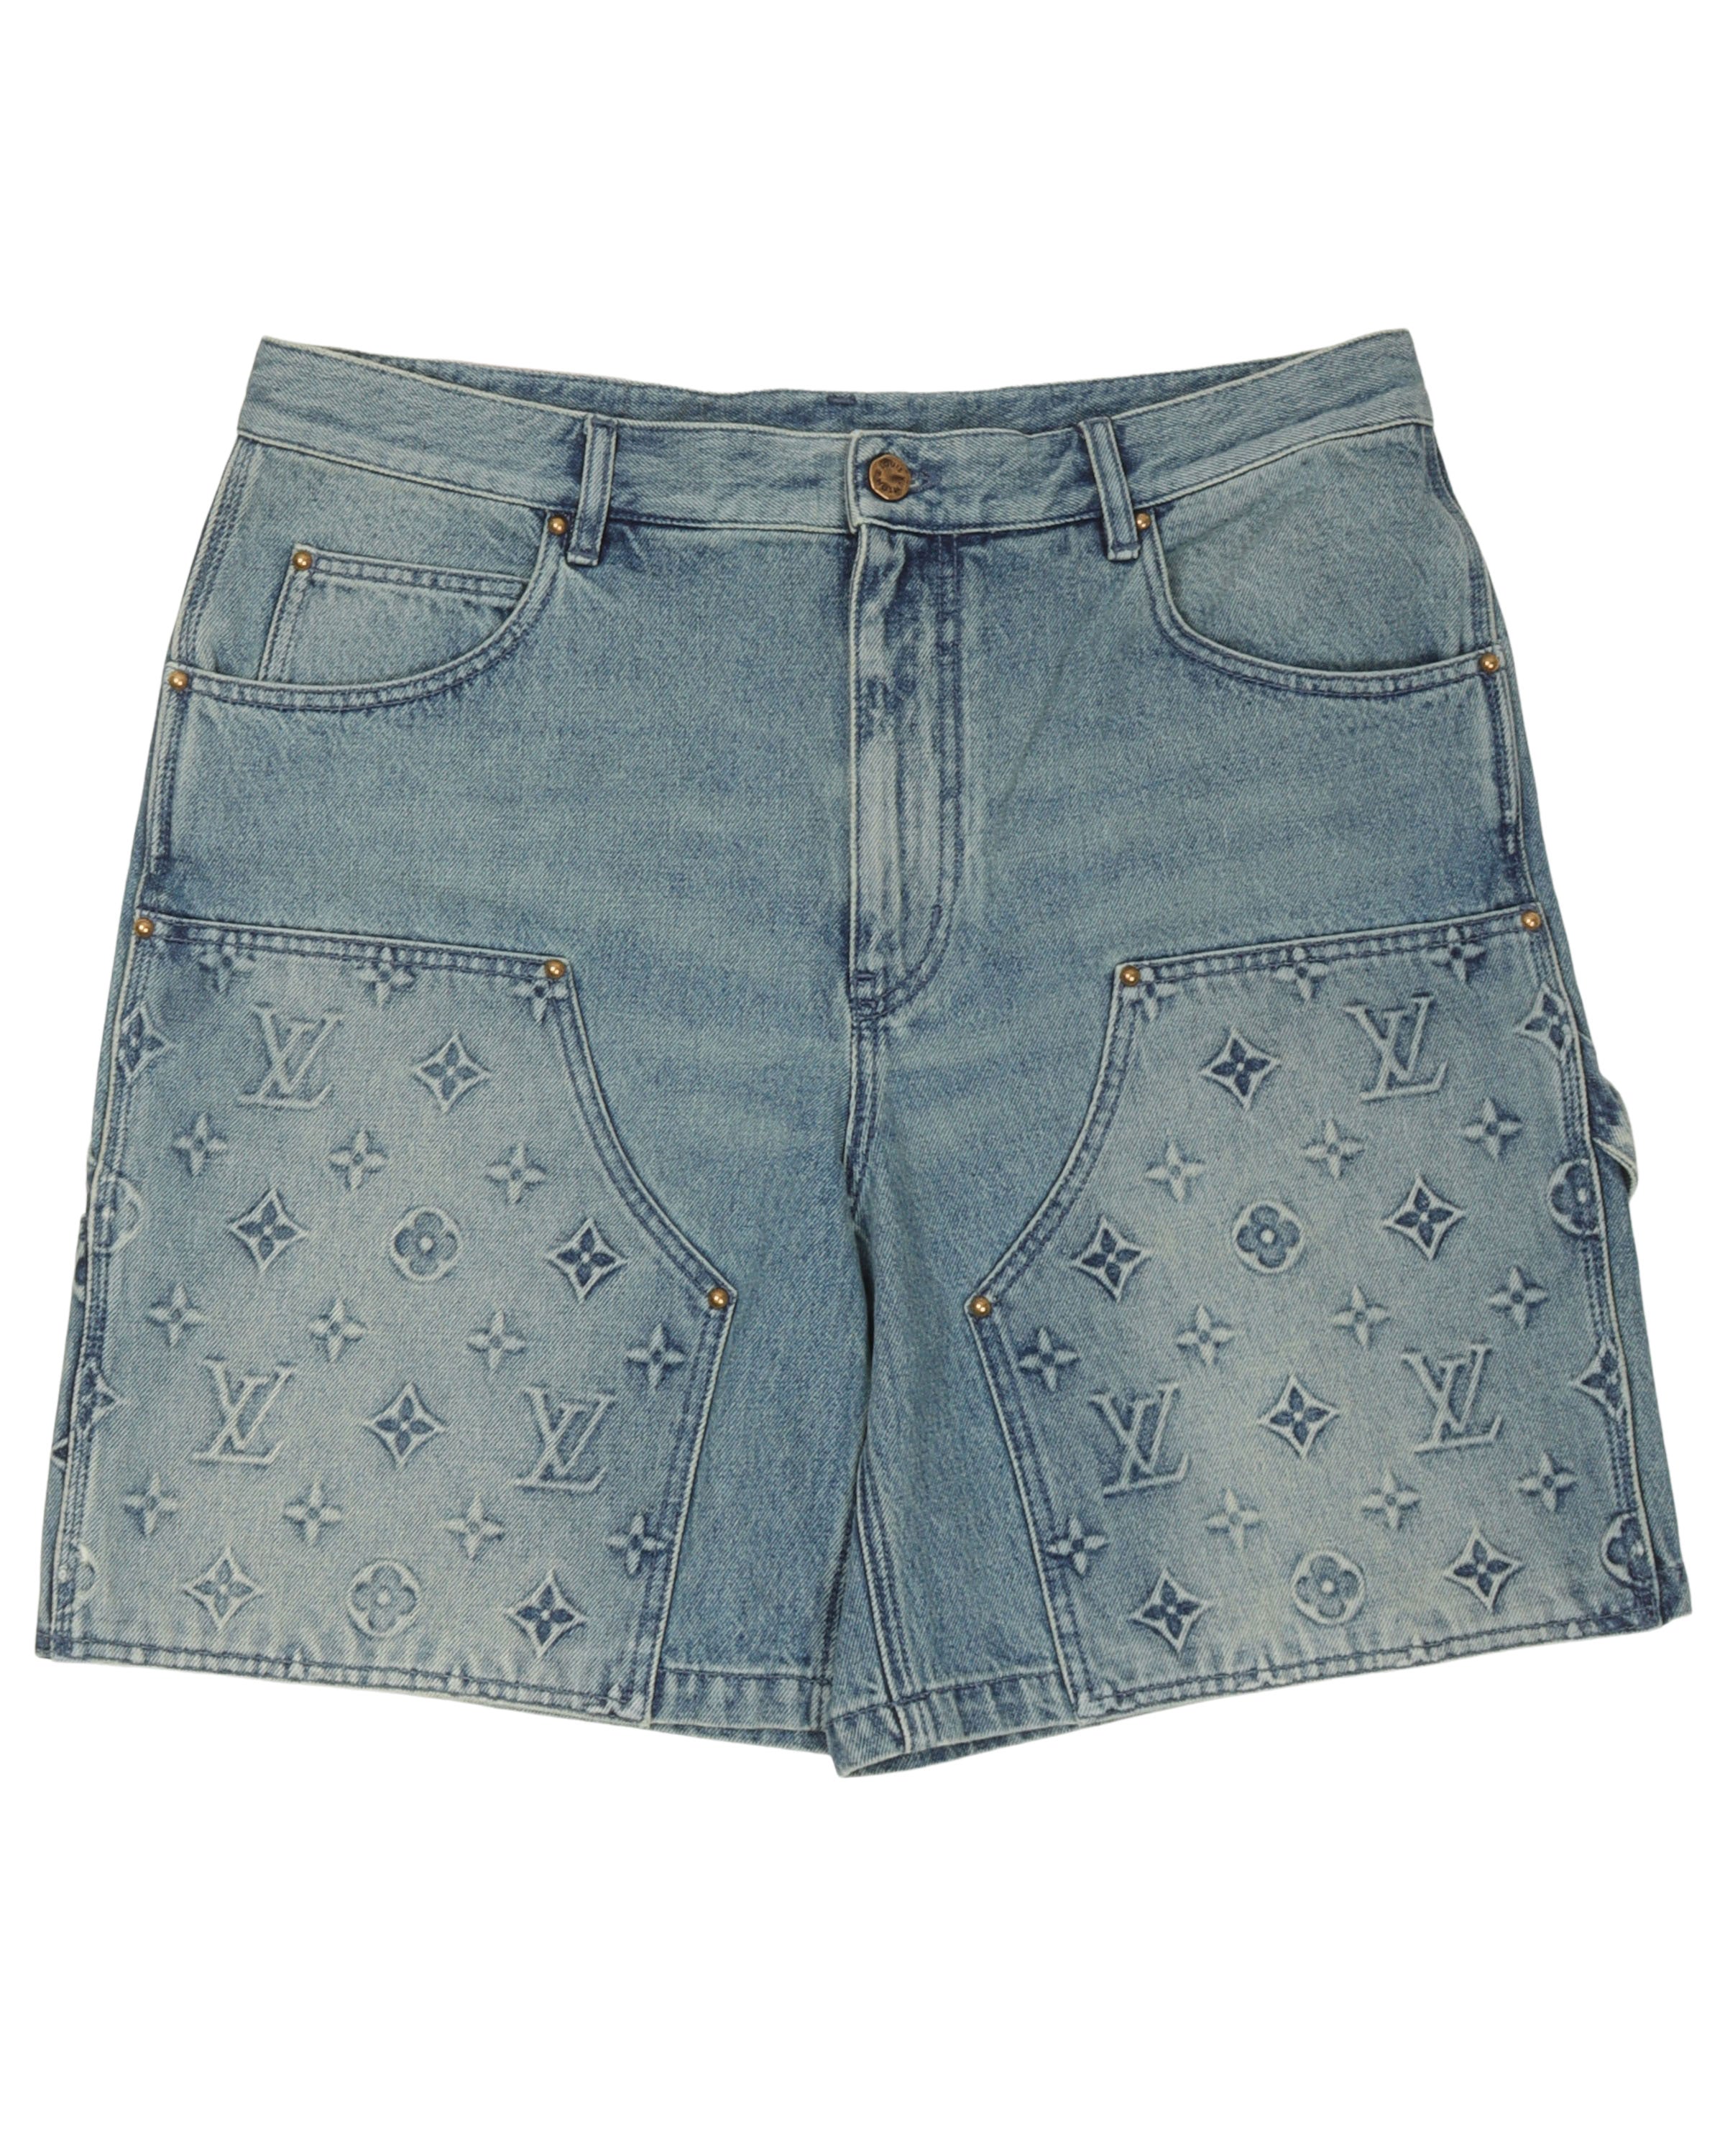 Louis Vuitton Low Rise Denim Shorts